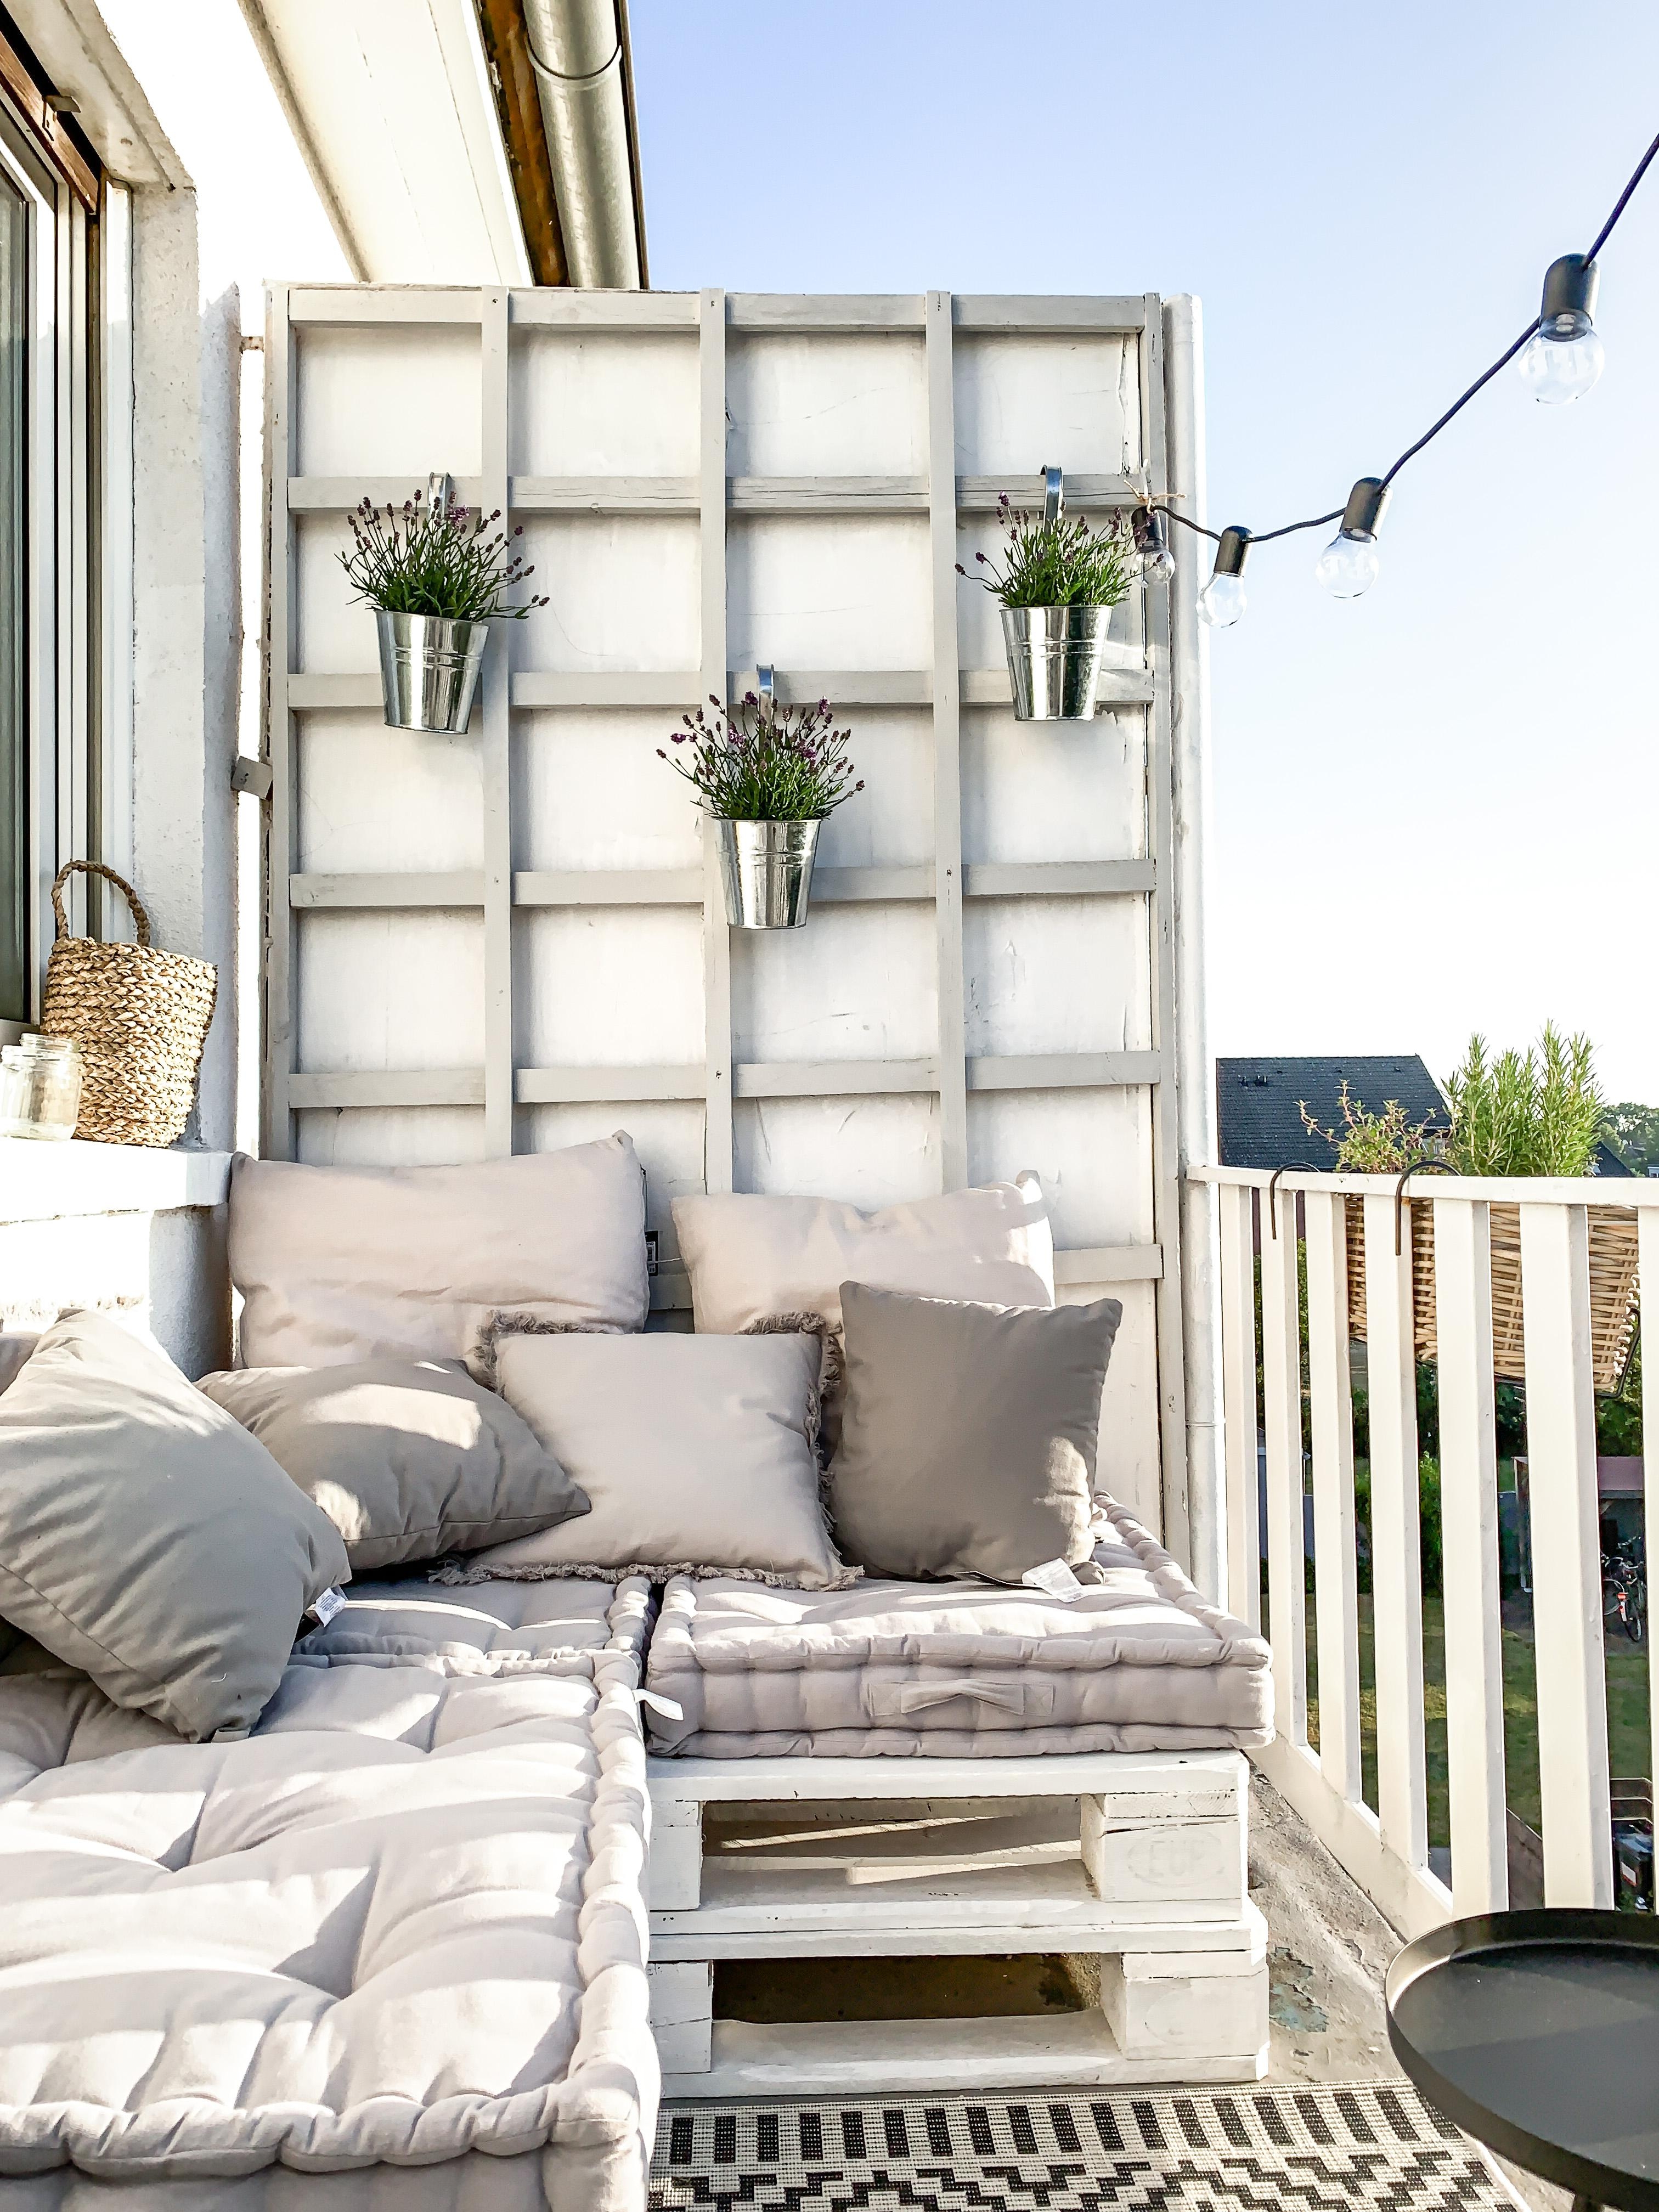 Balkon liebe 🤍🤍🤍 #balkon #balkonien #outdoor #lichterkette #palettenbank #diy #gemütlich #cozy